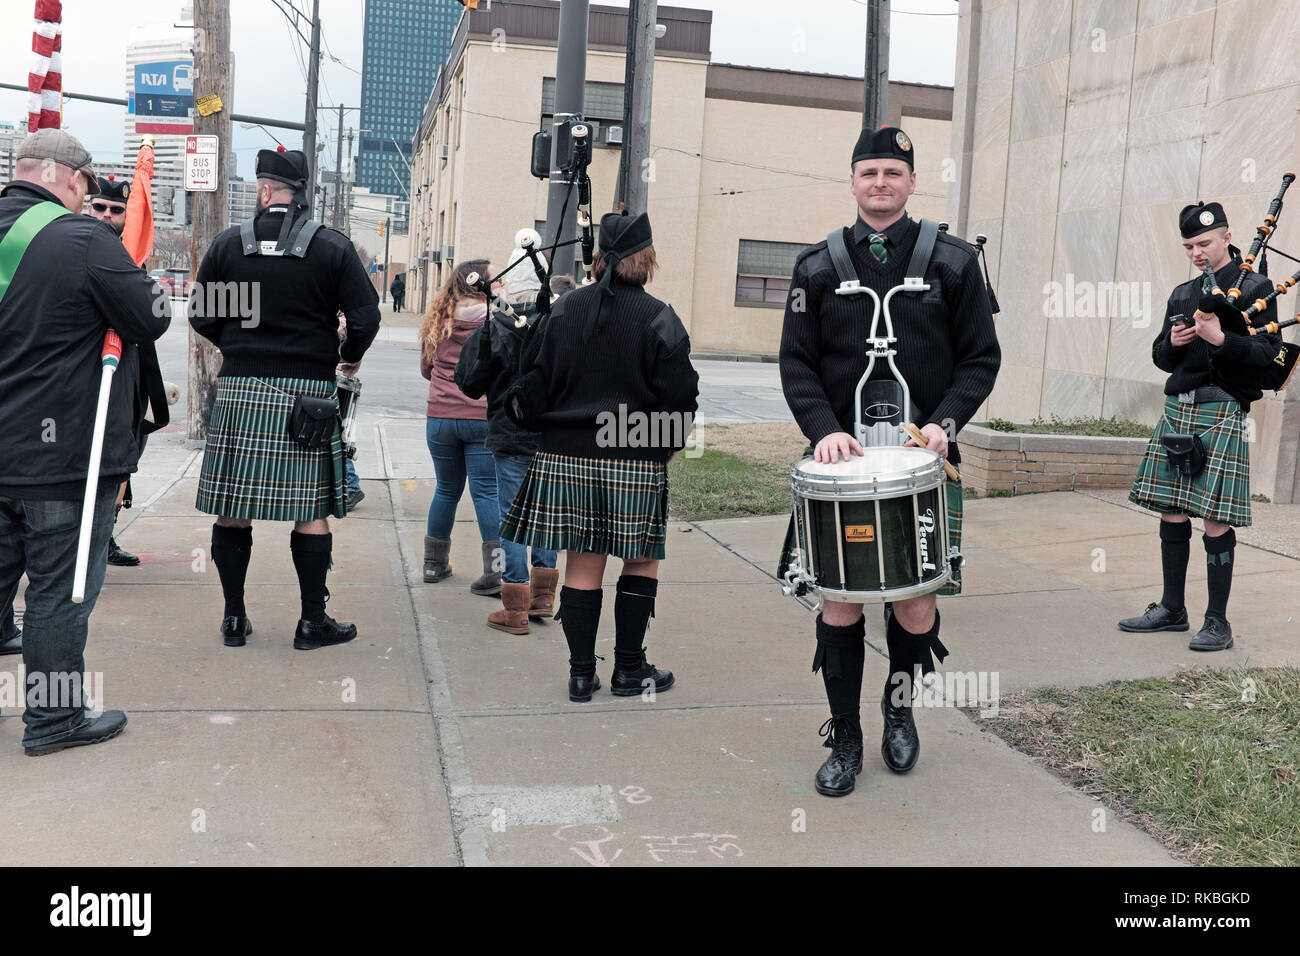 La band irlandese in kilt si riscalda prima di partecipare alla St. Patrick's Day Parade del 2017 nel centro di Cleveland, Ohio, USA. Foto Stock